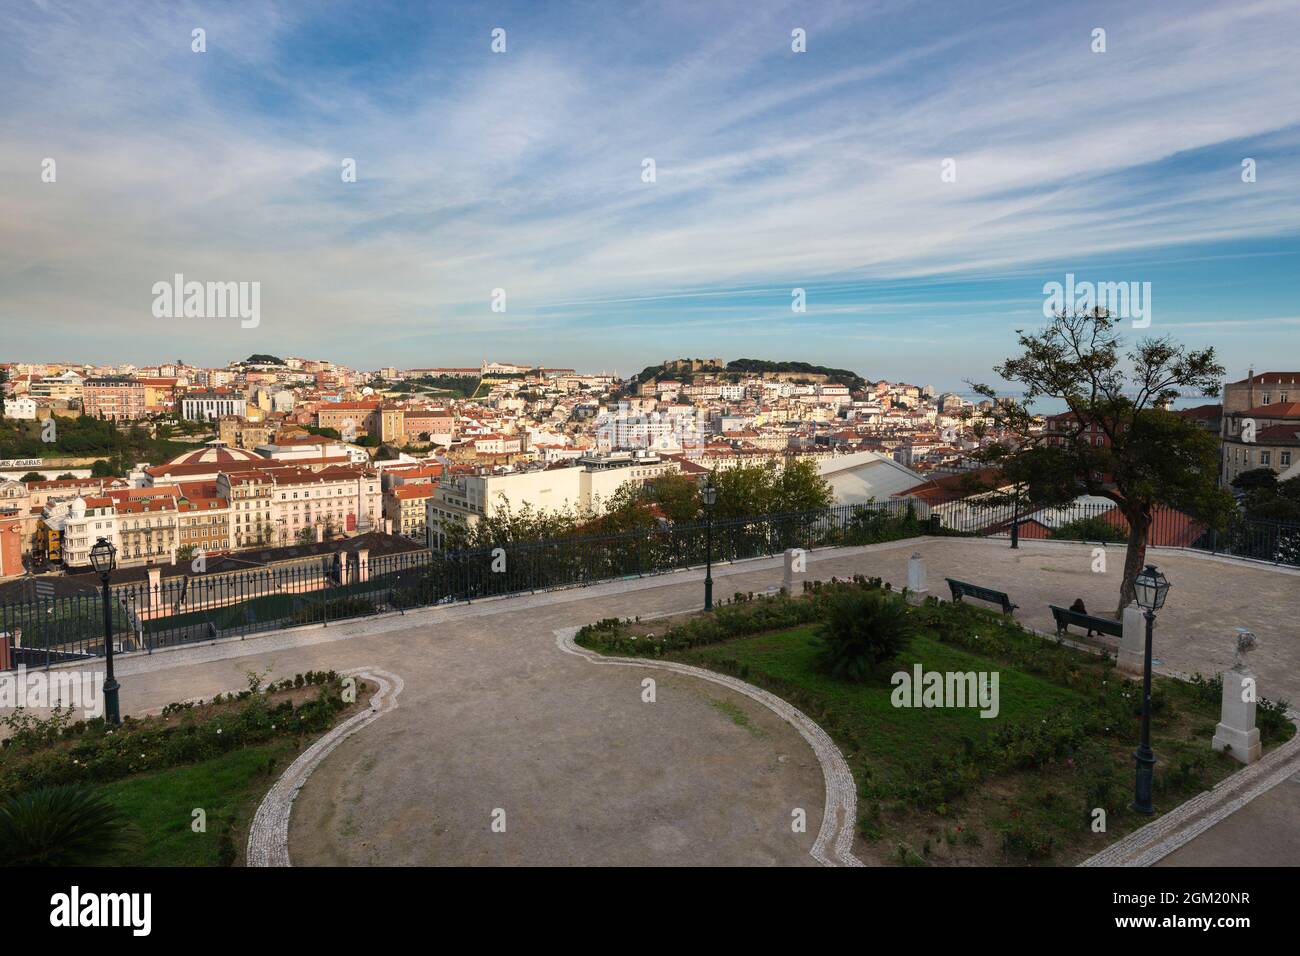 Lisboa, Portugal - 12 de noviembre de 2015: Hermosa vista del centro de la ciudad de Lisboa desde el mirador de San Pedro de Alcantara, con los pombali Foto de stock